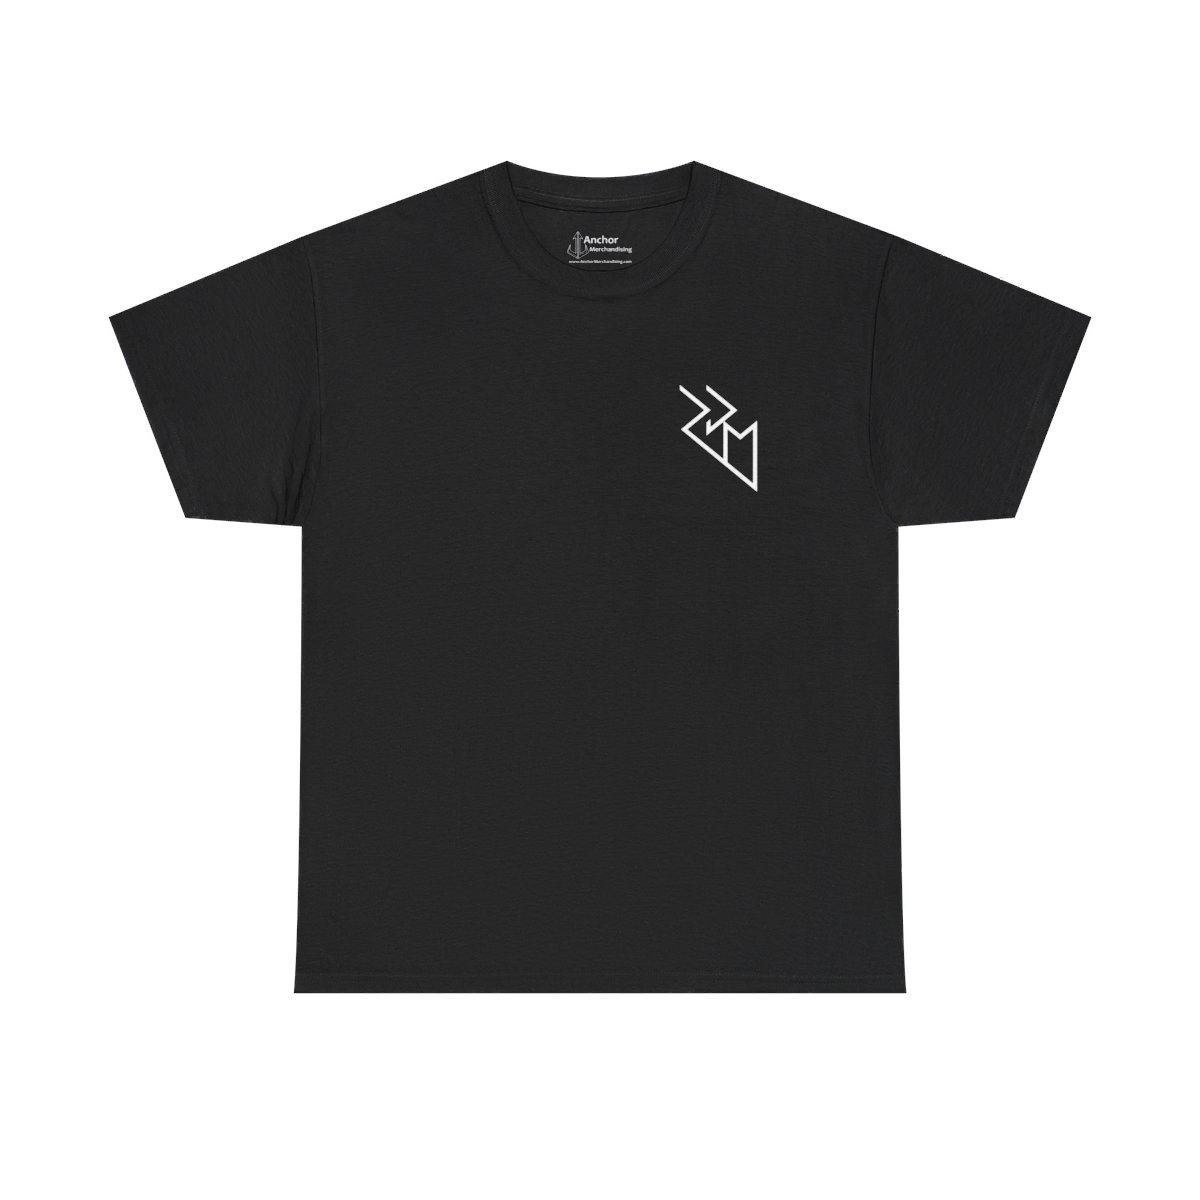 Roger Dale Martin – Vengeance Rising Logo Short Sleeve Tshirt (2-Sided)